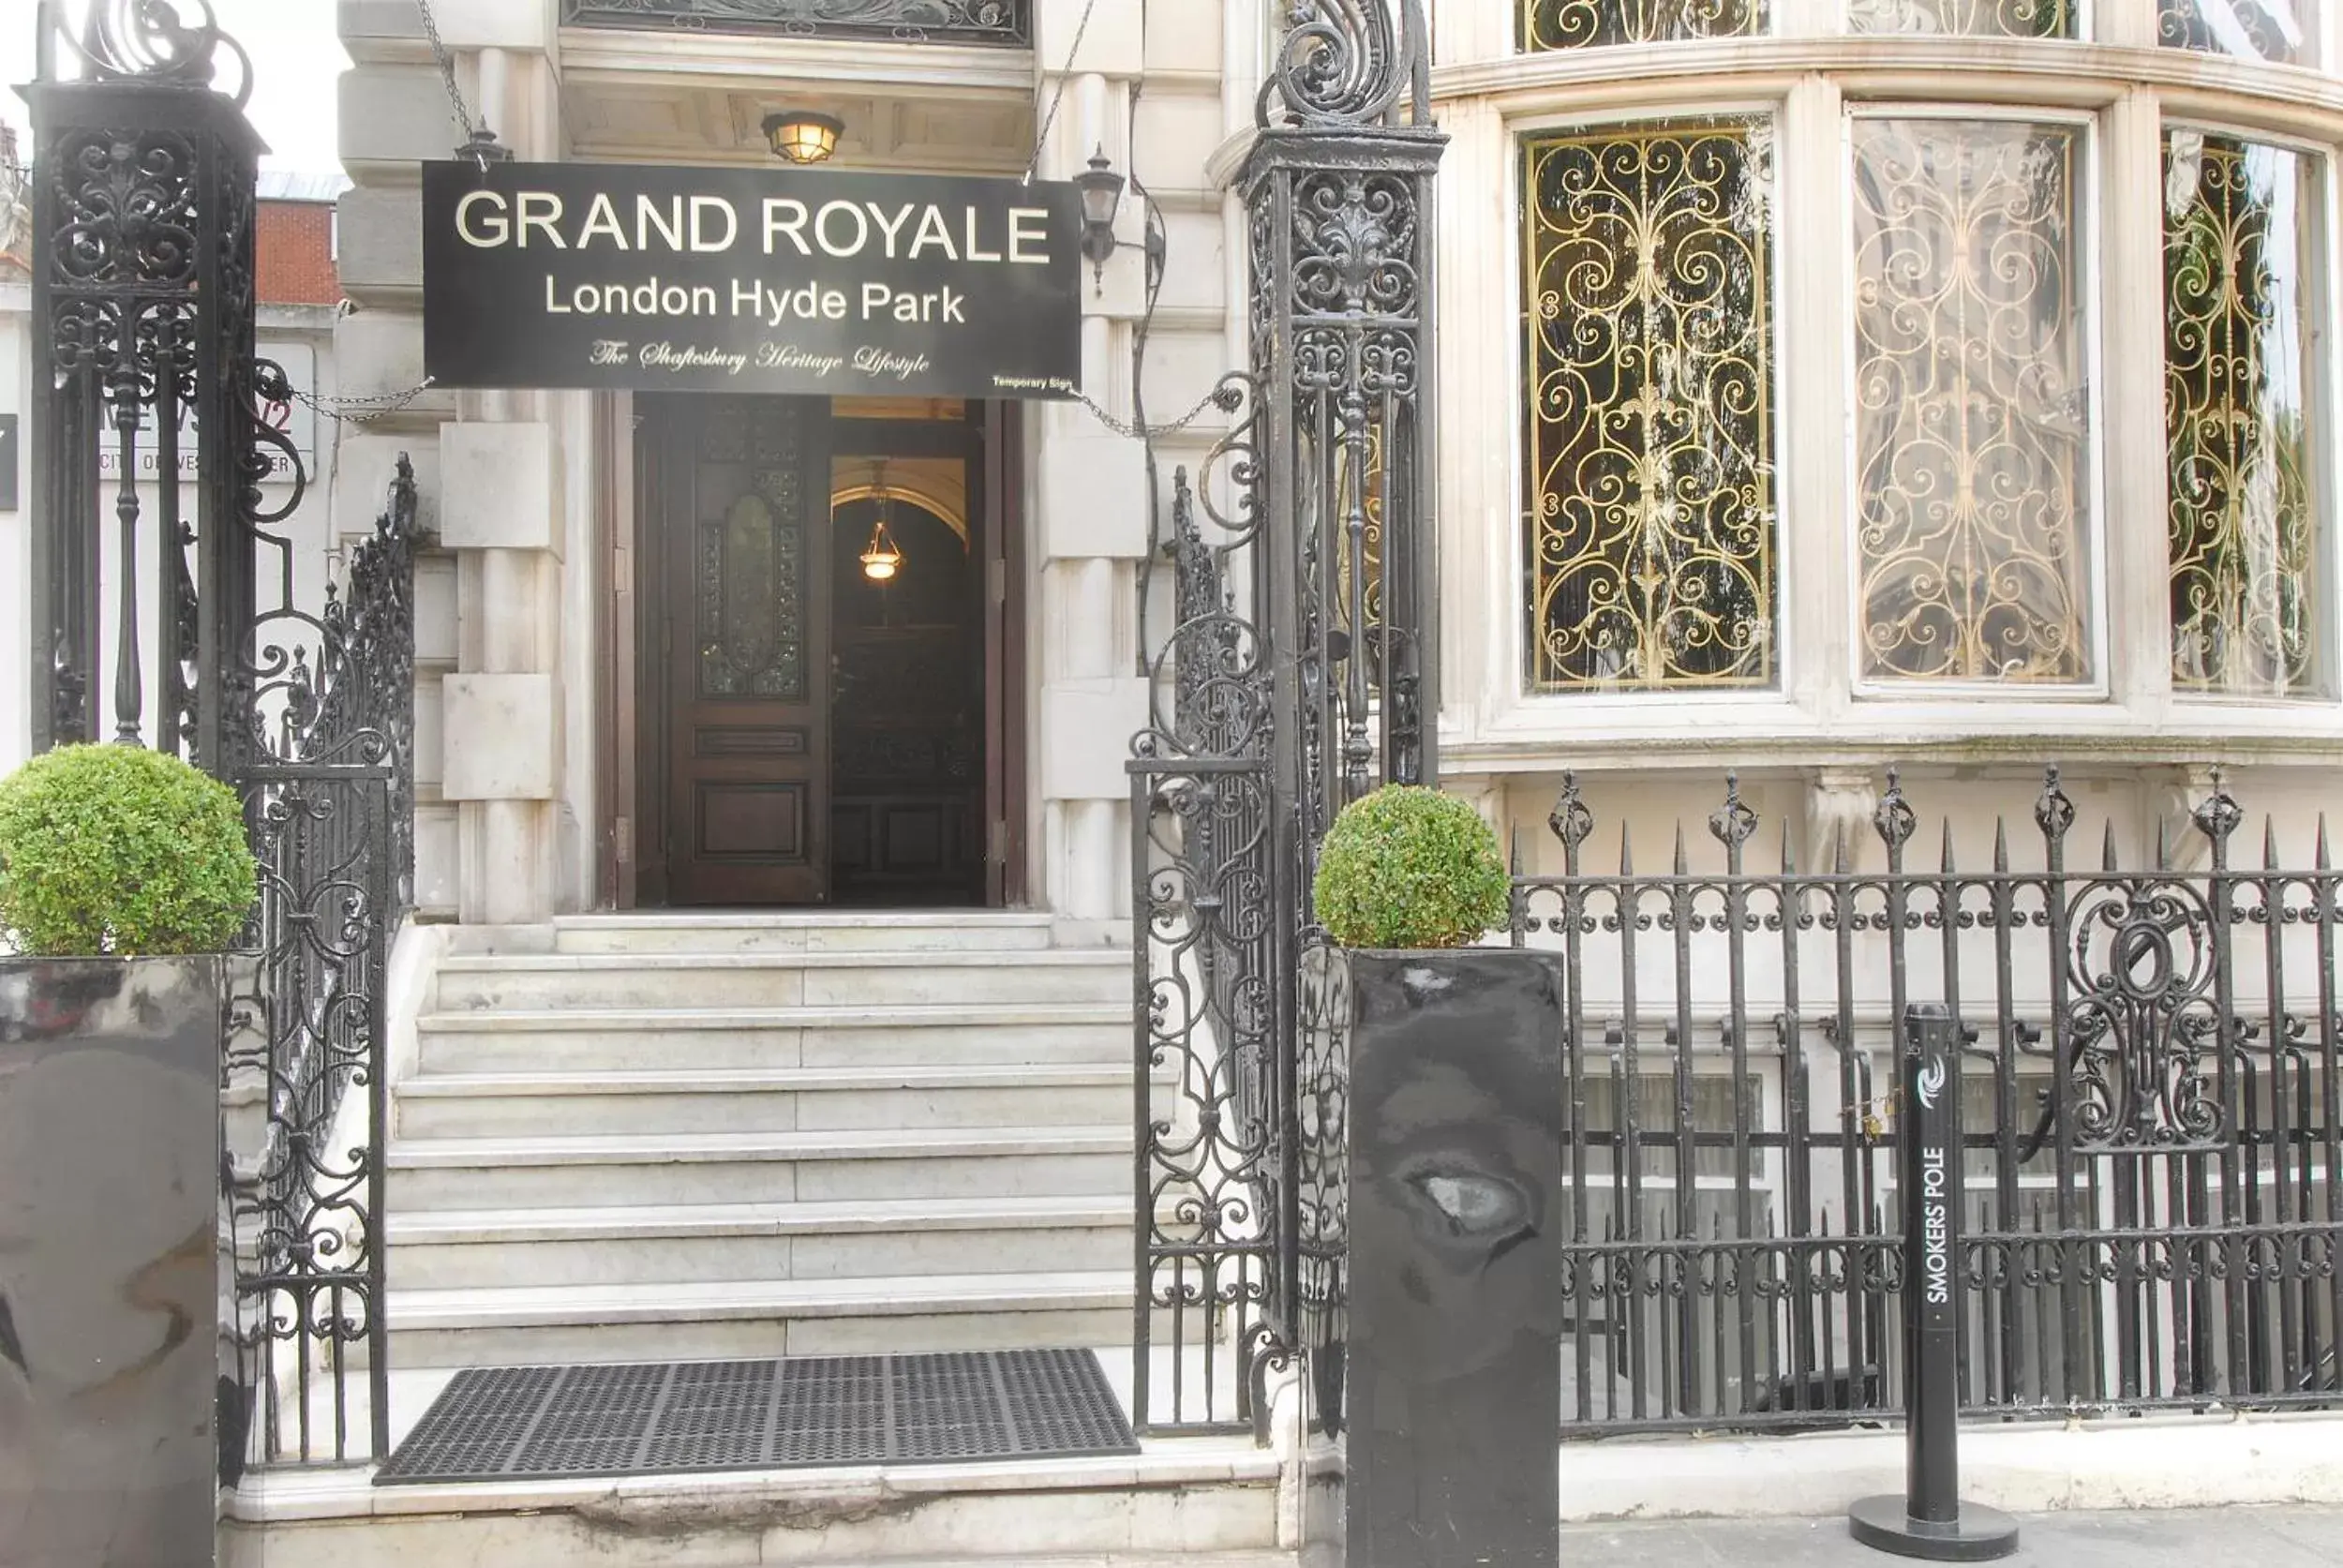 Facade/entrance in Grand Royale London Hyde Park